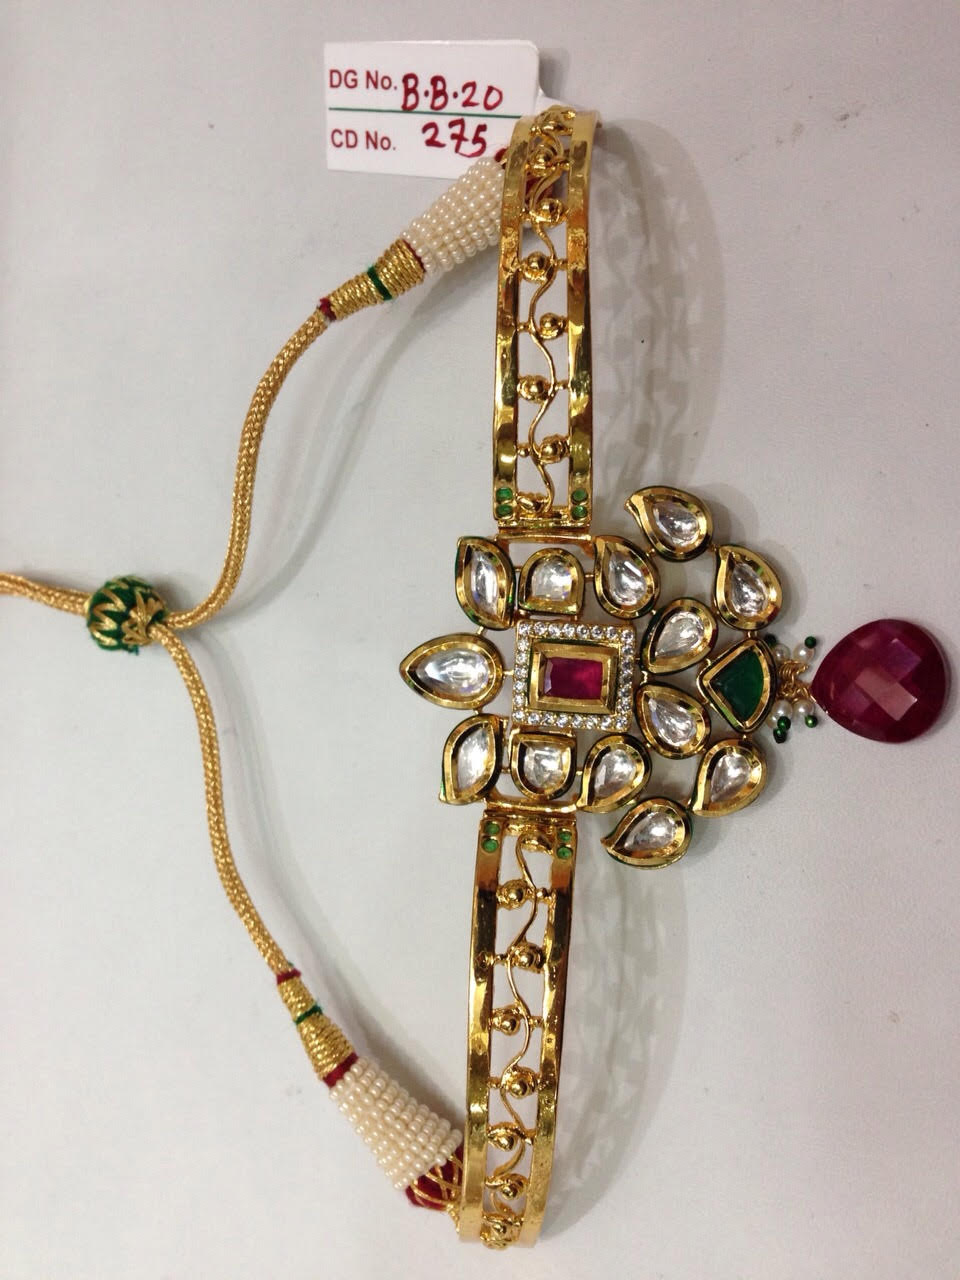 kundan necklace